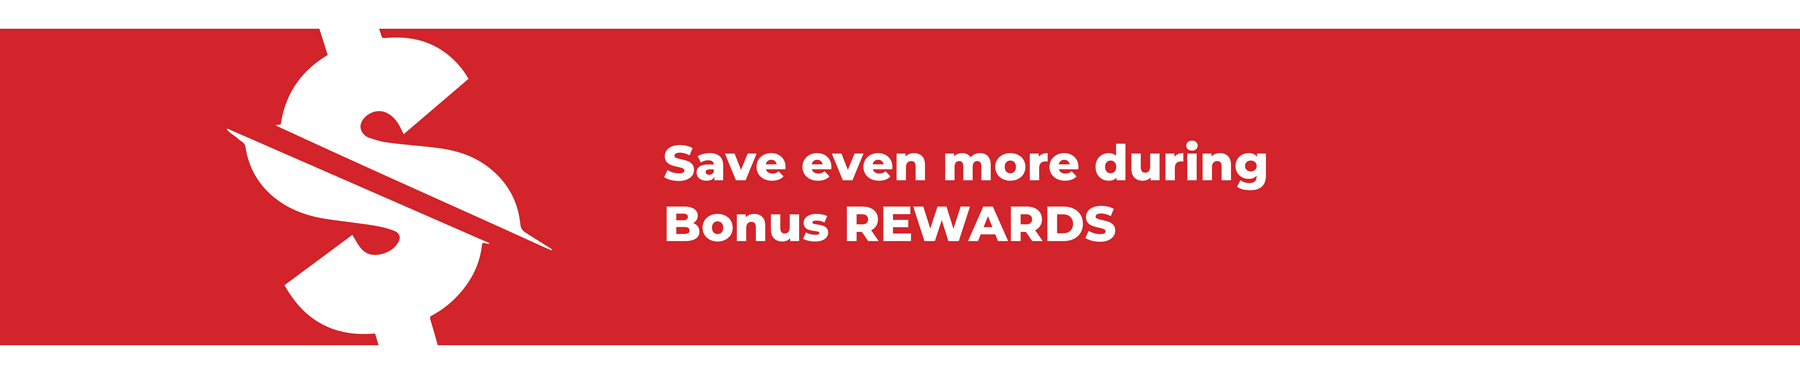 Save even more during Bonus Rewards